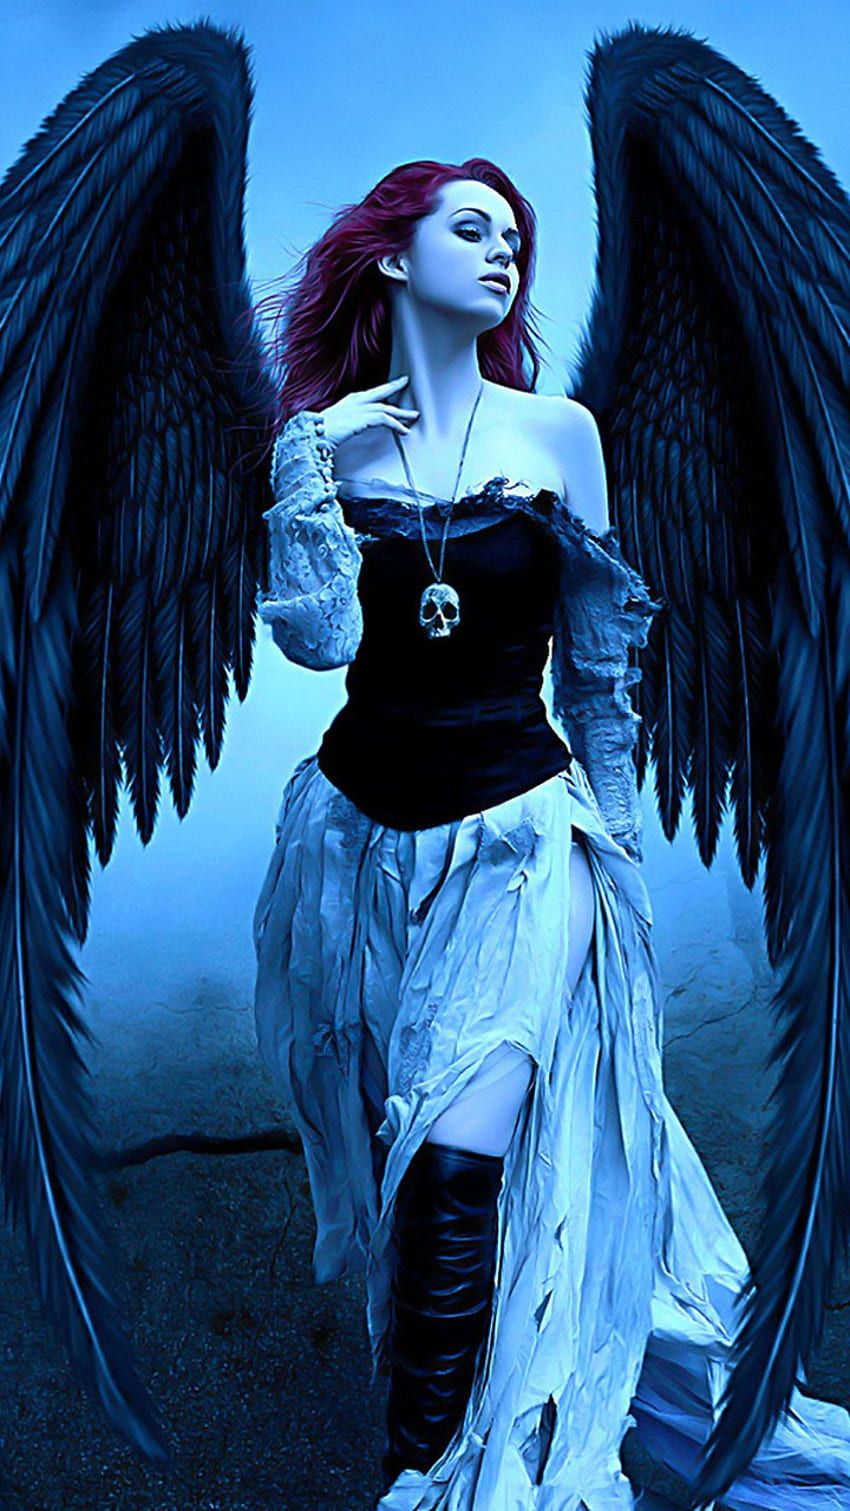  Wunderschöne Engel Hintergrundbild 850x1511. Schöner Dunkler Engel Neueste HD Handy Hintergrundbild